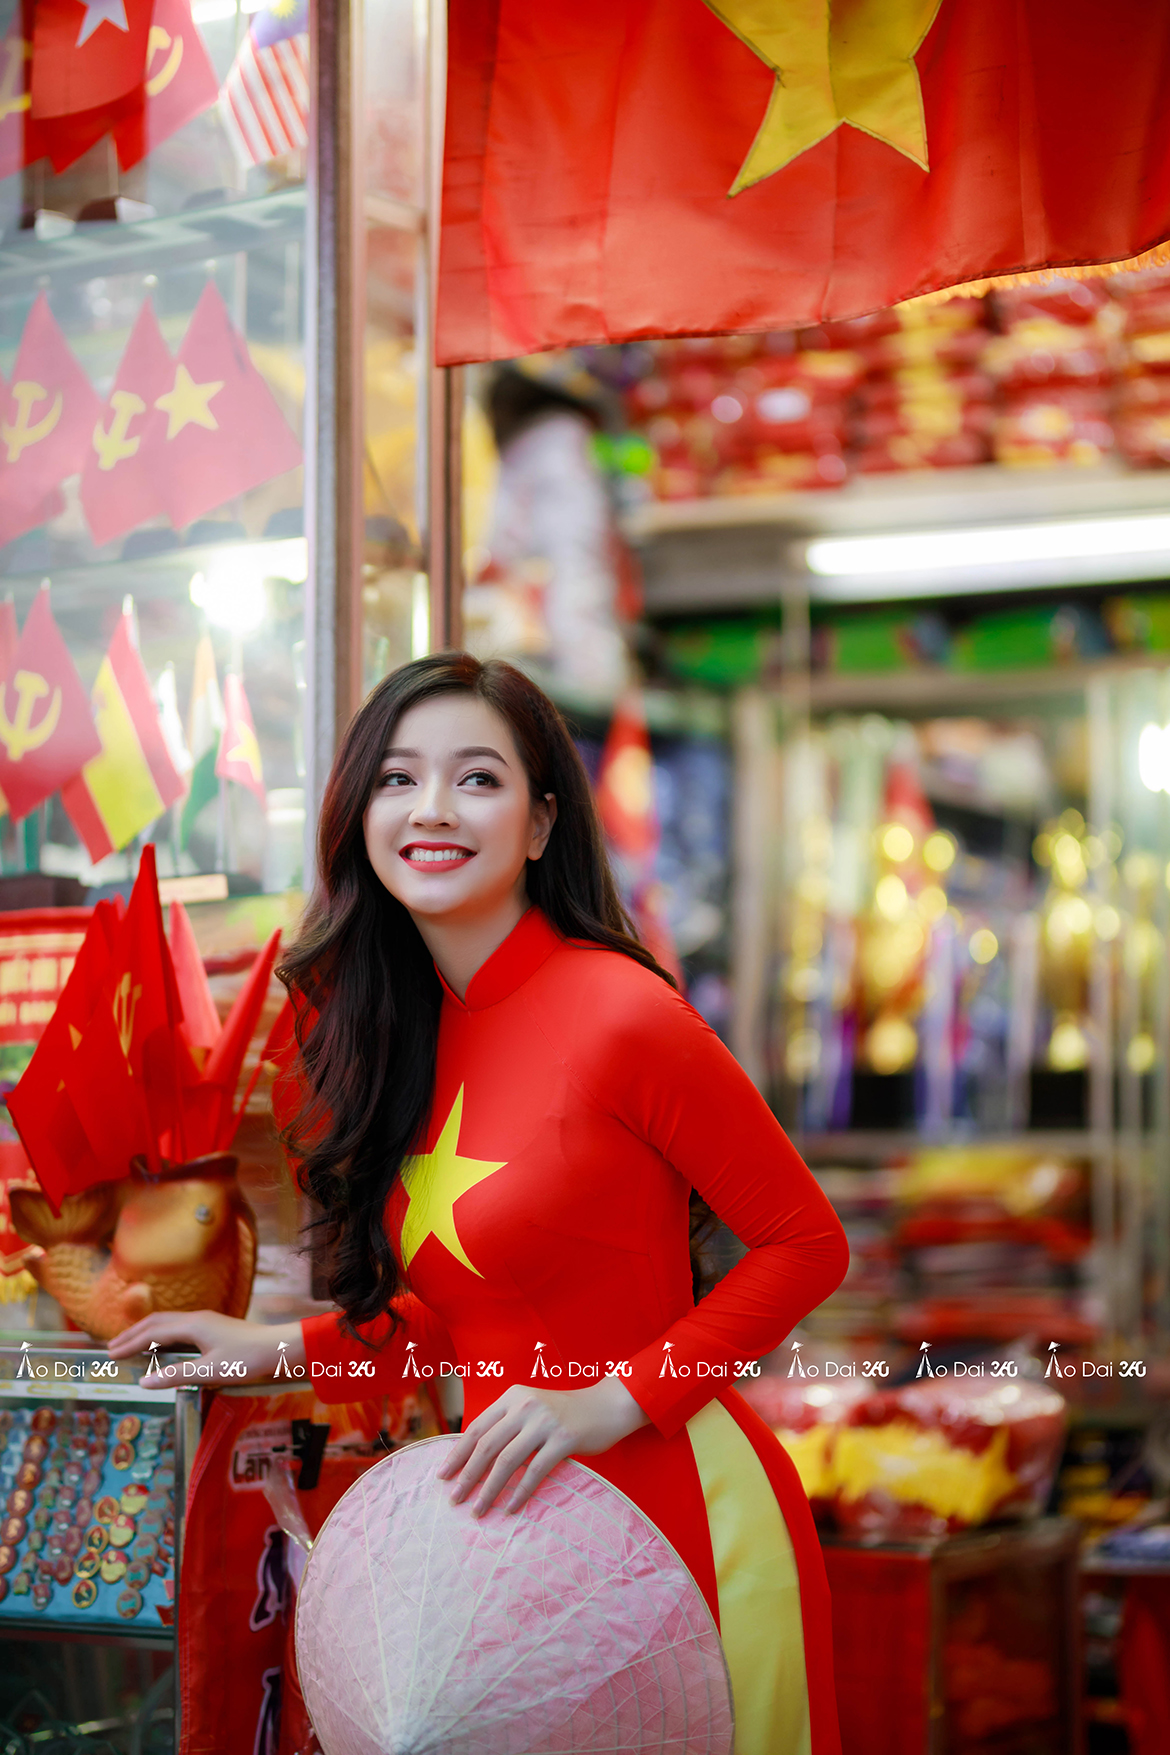 Áo dài cờ đỏ sao vàng: 
Áo dài cờ đỏ sao vàng là trang phục truyền thống đặc trưng của người phụ nữ Việt Nam. Với kiểu dáng đẹp mắt và sự kết hợp giữa hai màu cờ đỏ sao vàng, áo dài trở thành biểu tượng của vẻ đẹp quý phái và tinh tế. Hãy thưởng thức những hình ảnh áo dài cờ đỏ sao vàng đẹp nhất qua các bức ảnh độc đáo.